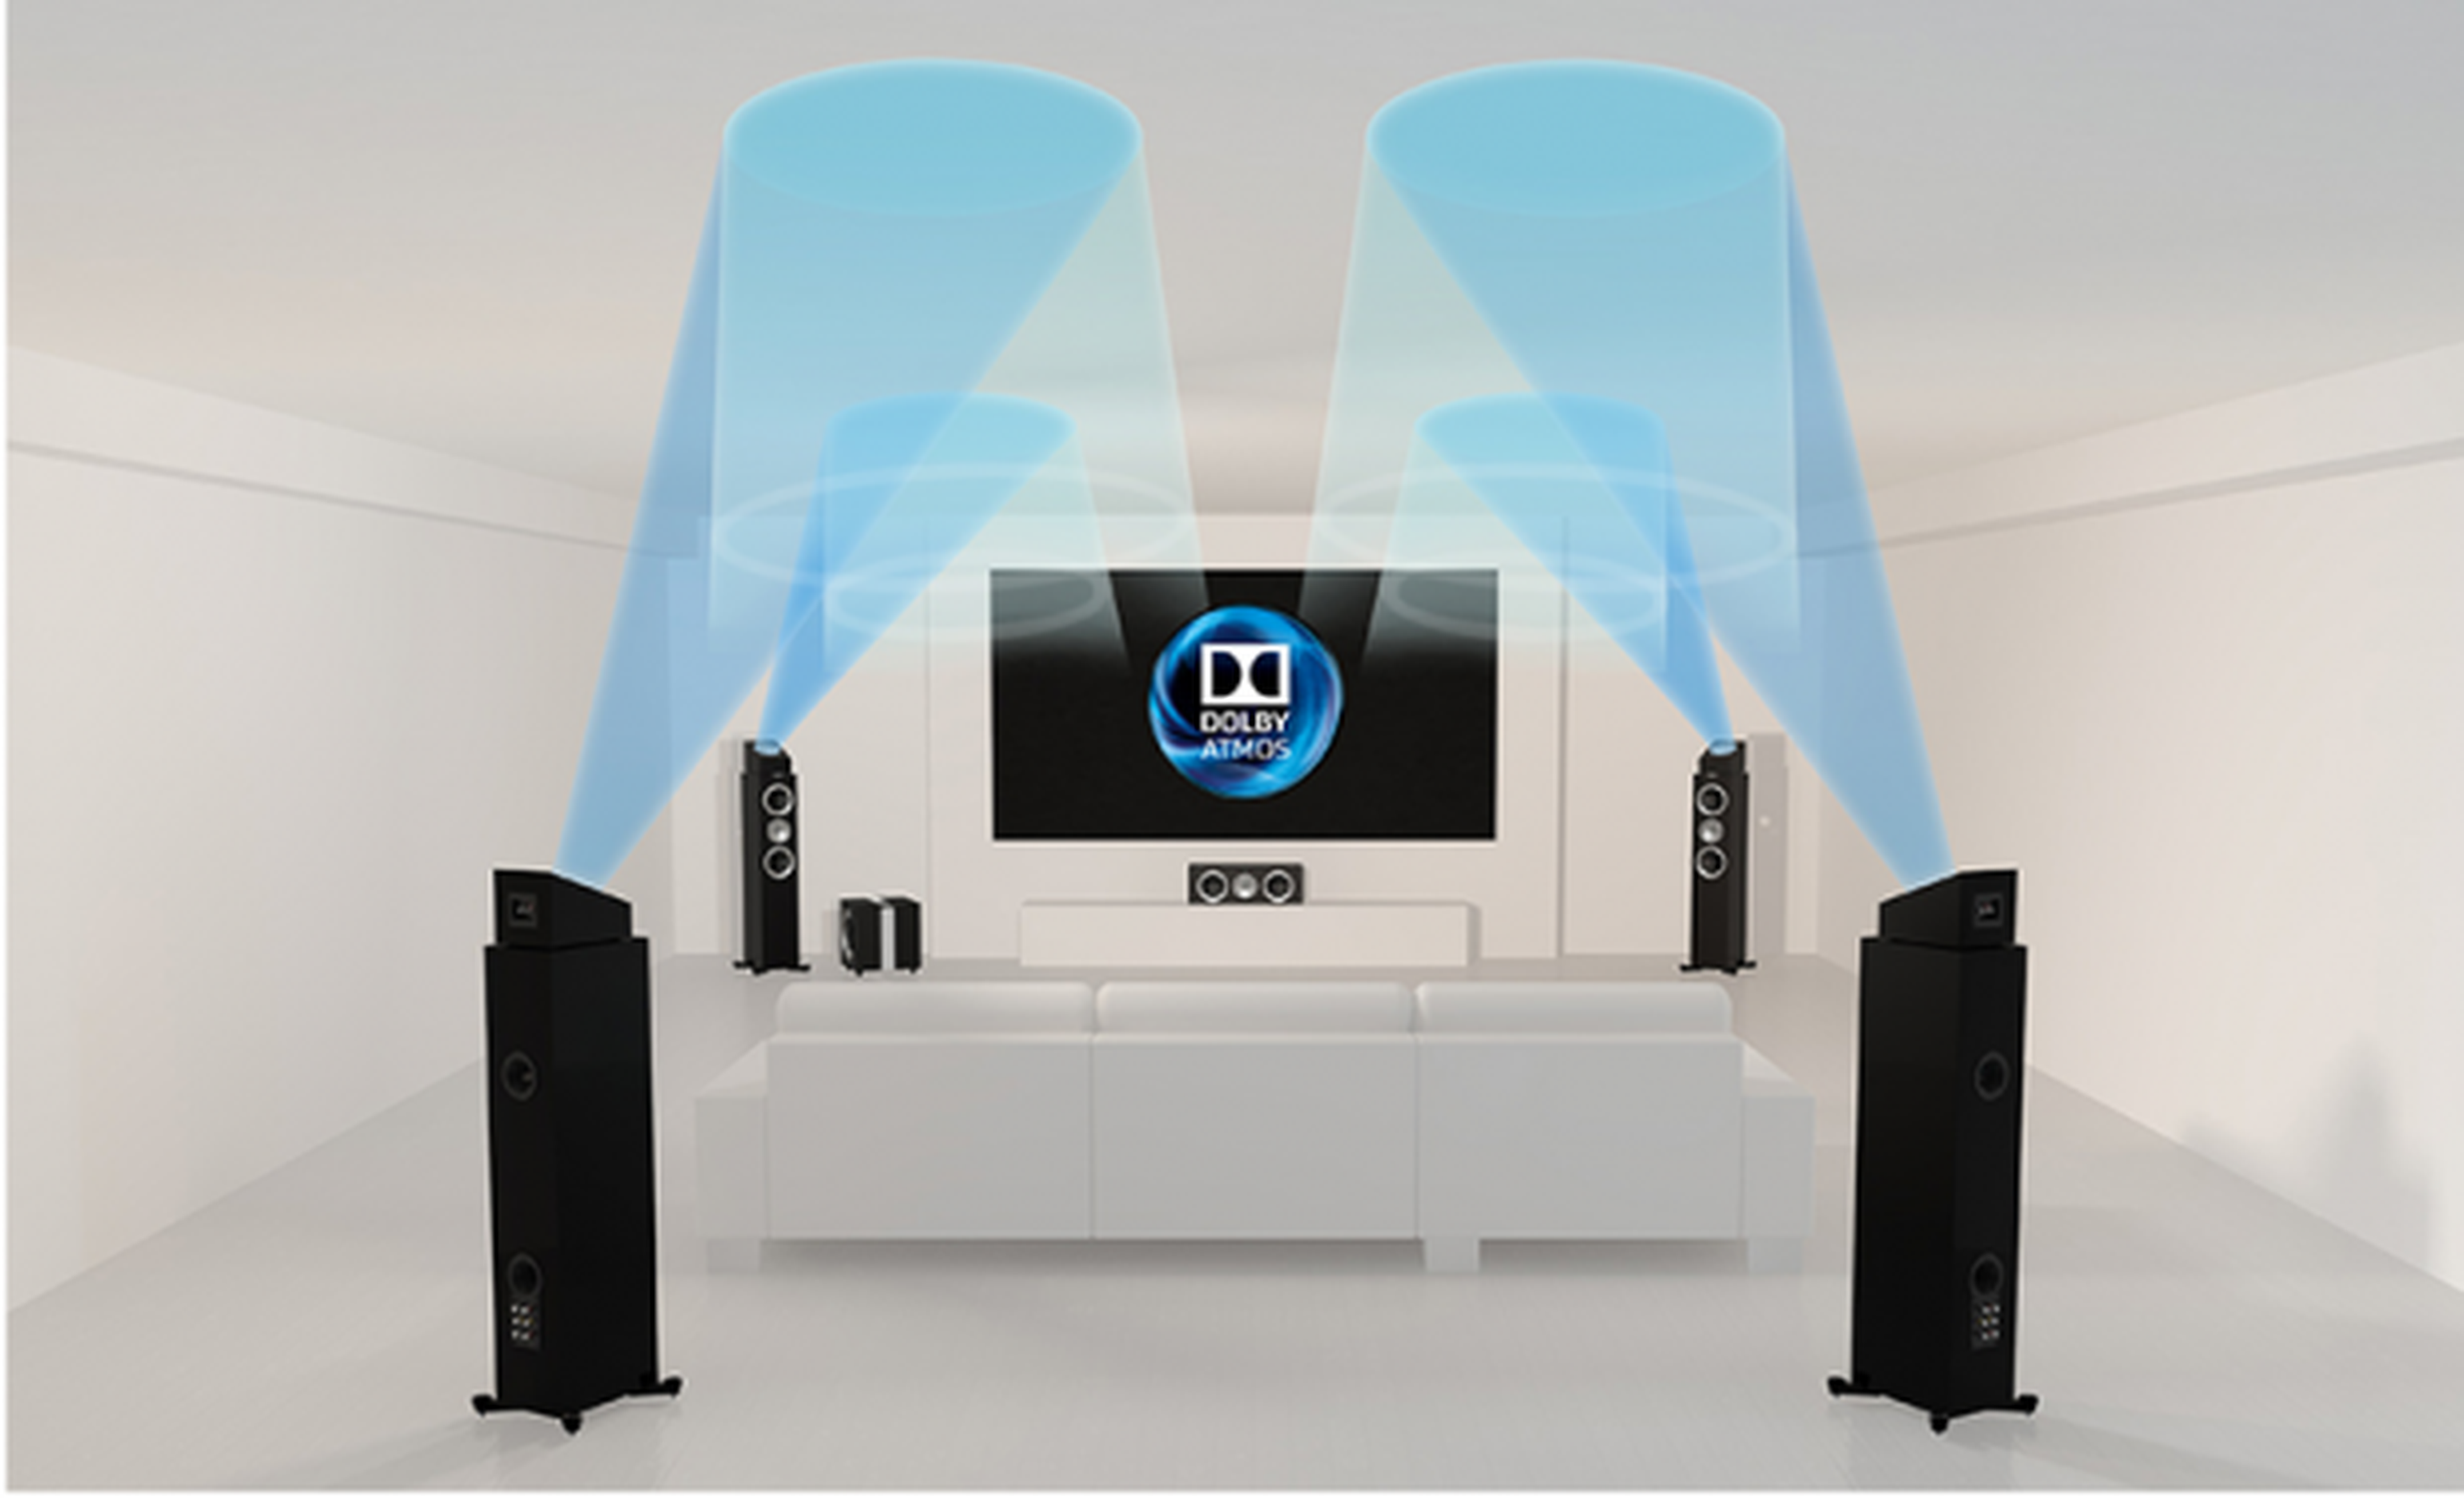 Sonido envolvente Dolby Atmos, ¿qué es y cómo funciona?